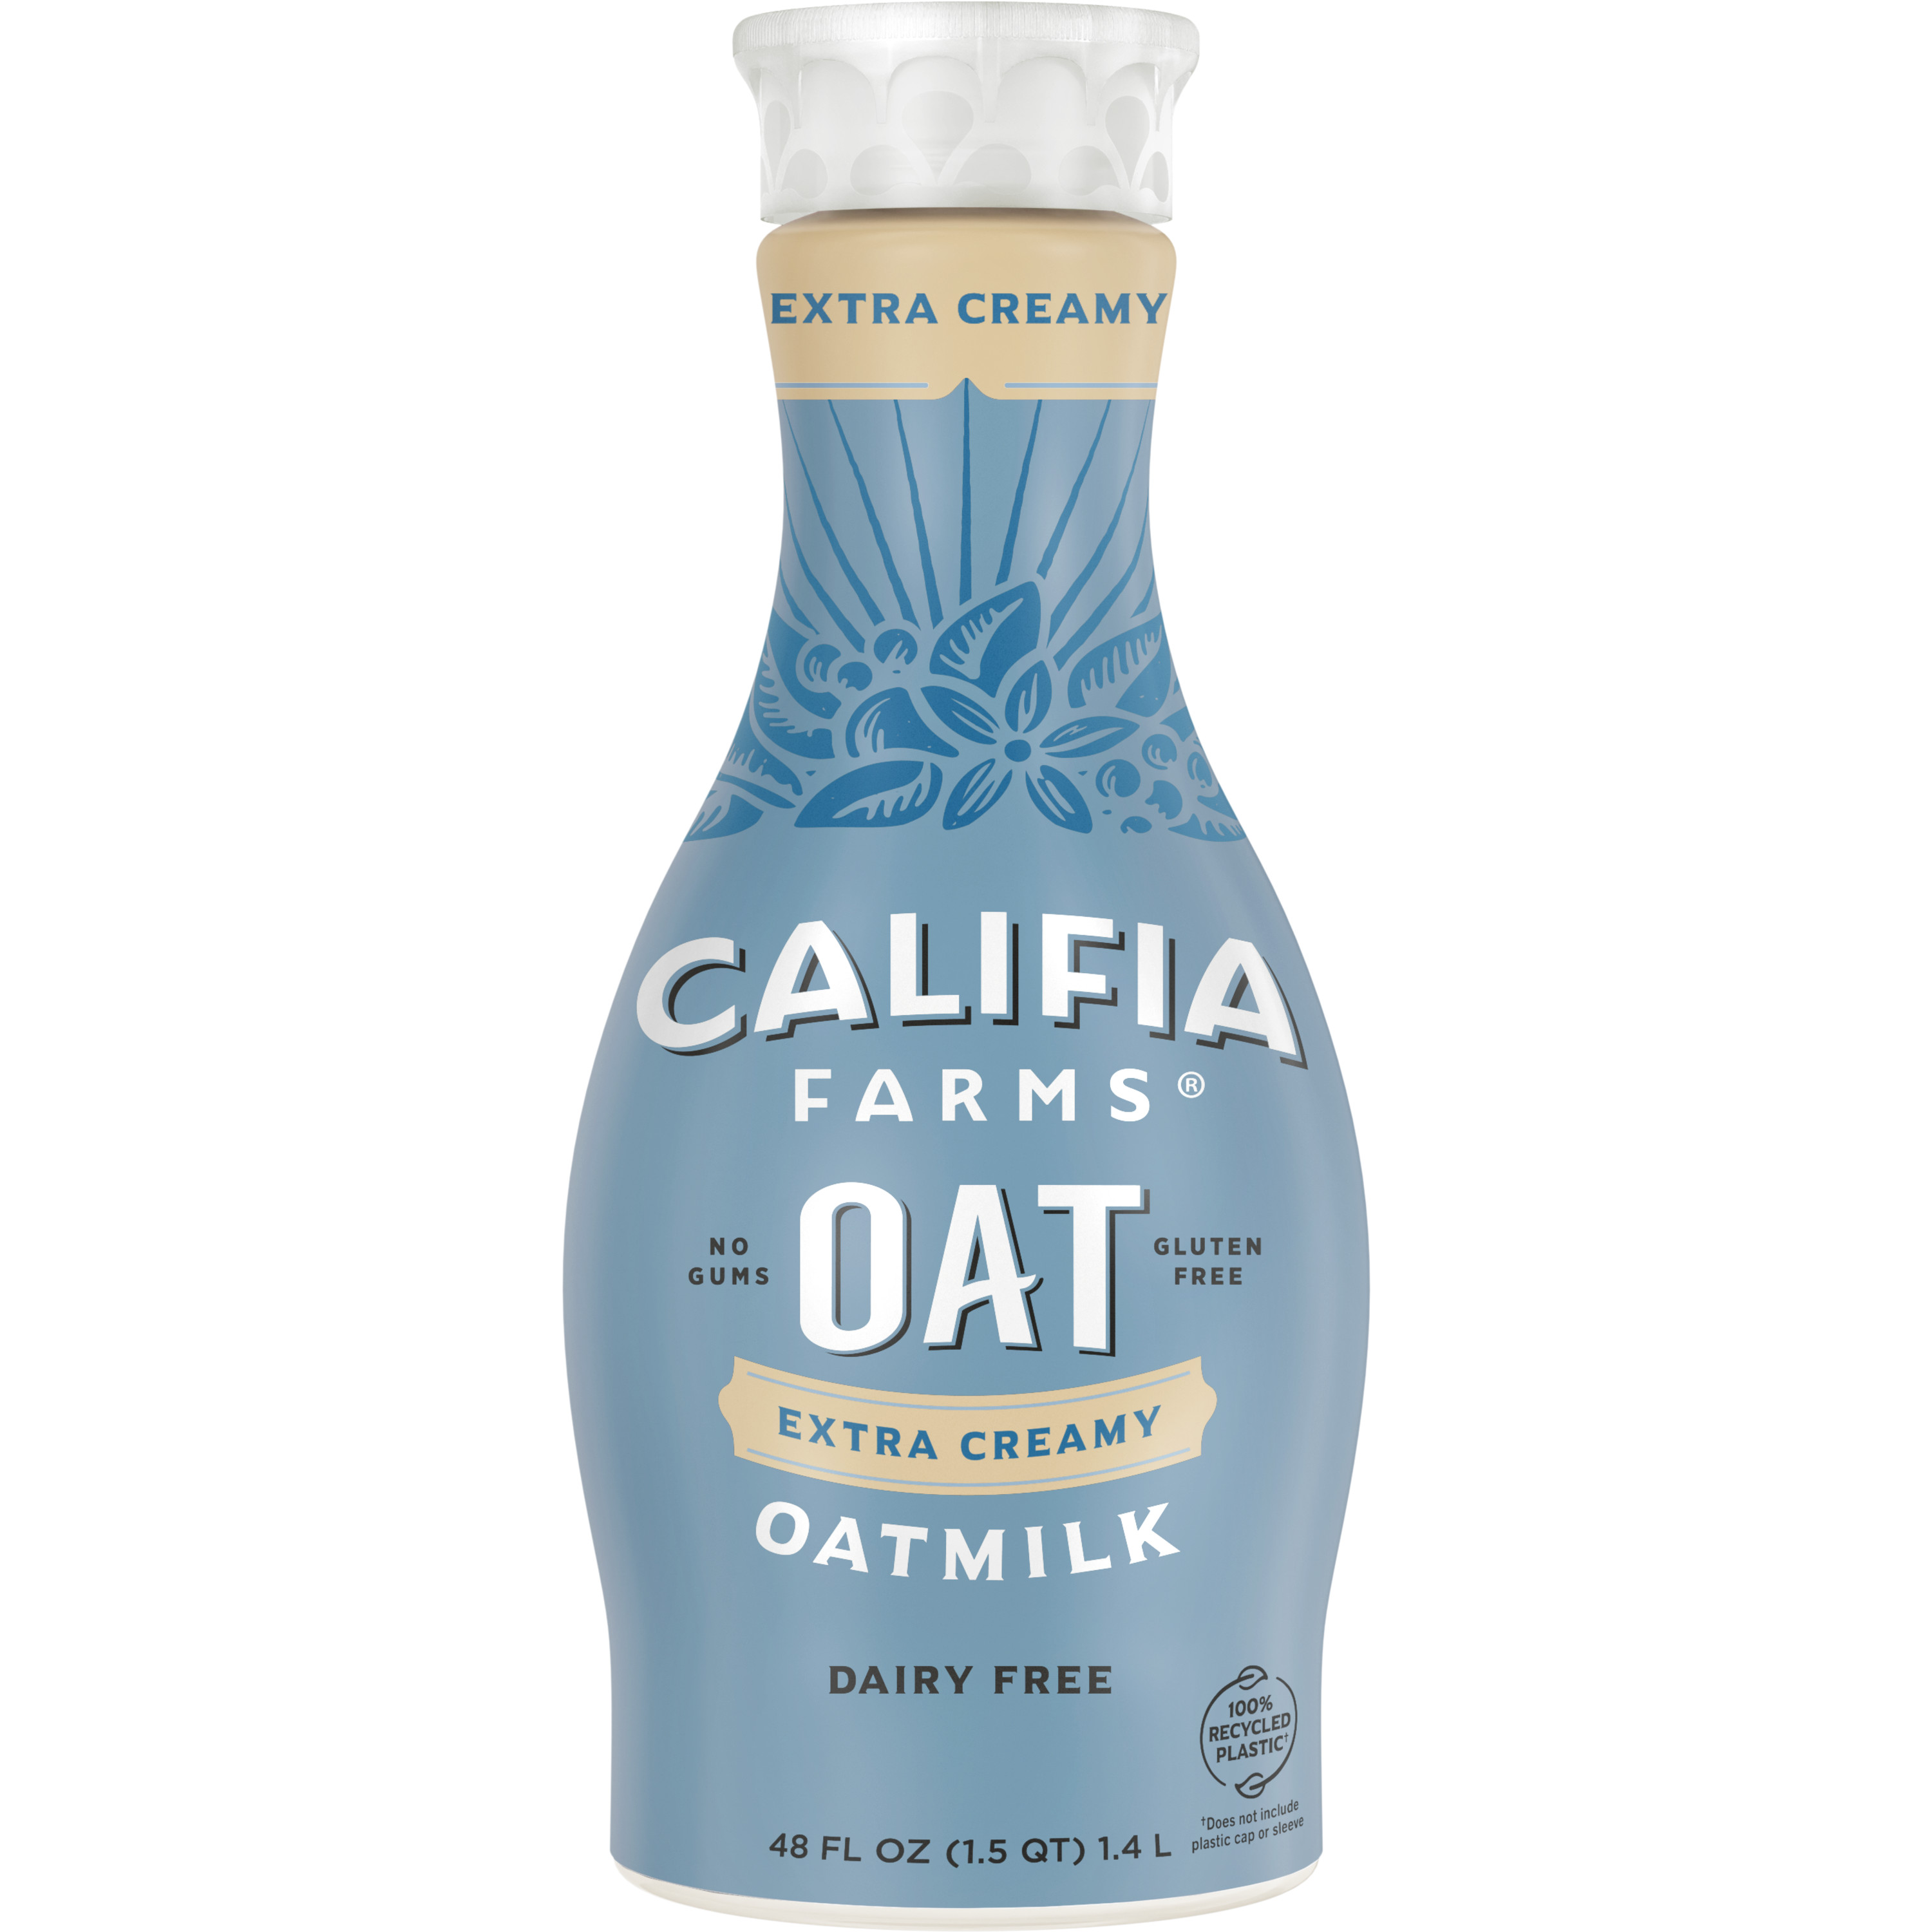 Califia Farms Oatmilk - Extra Creamy 6 units per case 48.0 oz